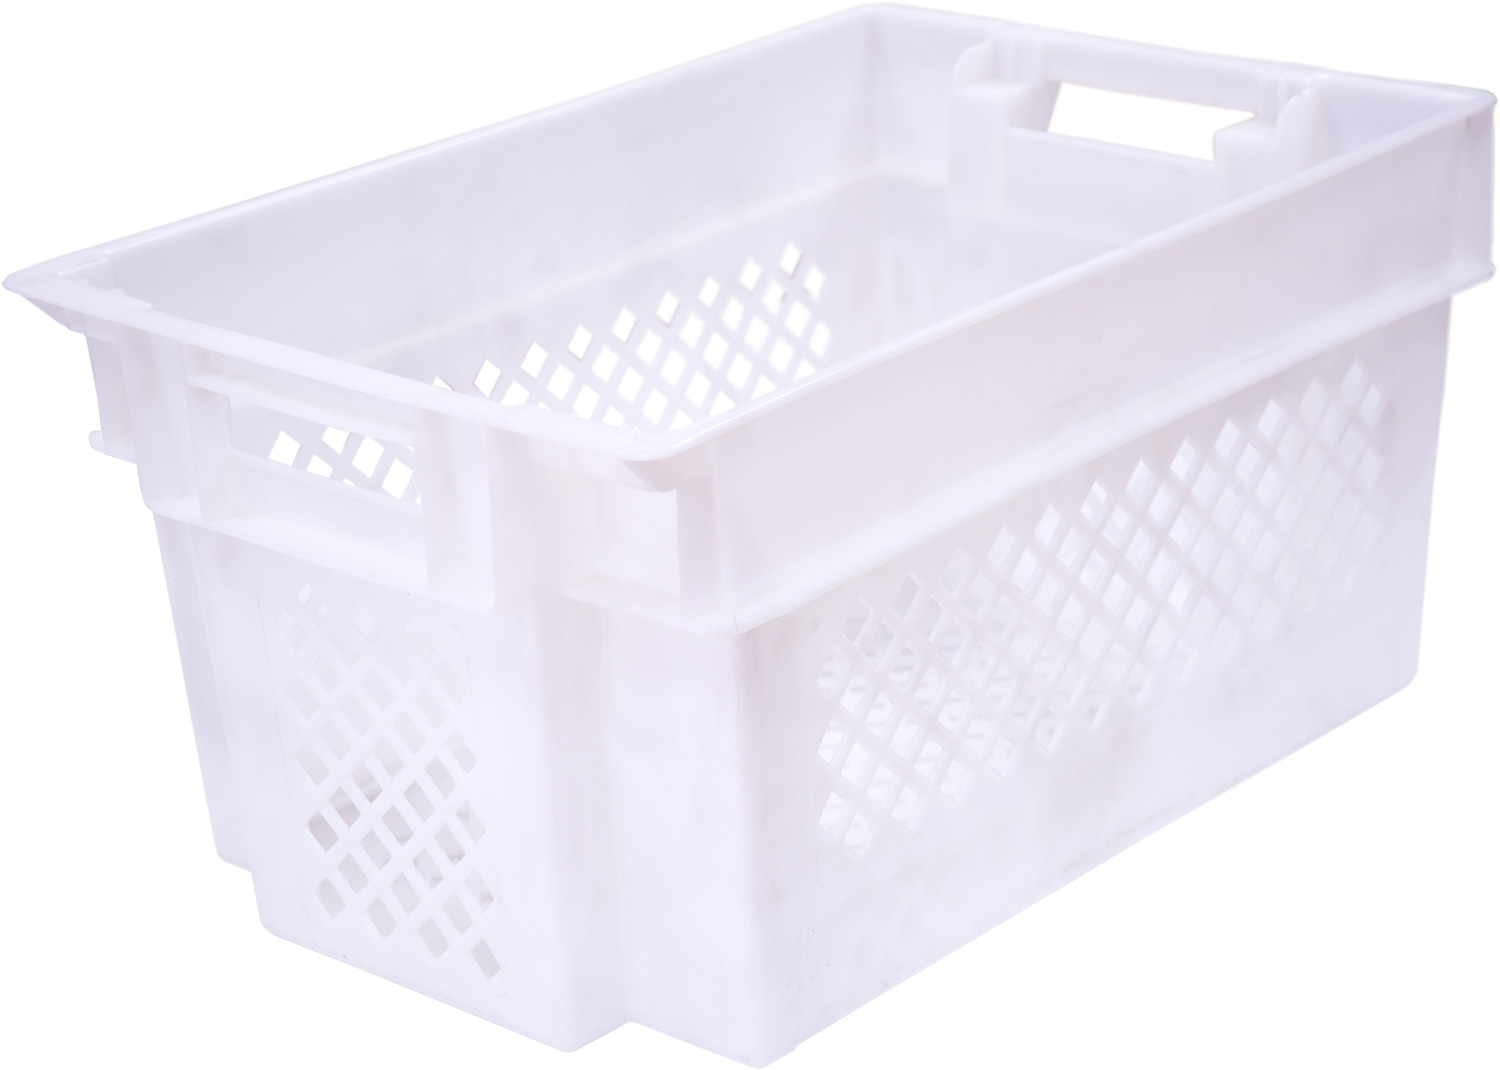 Ящик морозостойкий 108 пластиковый 600х400х300 мм для универсального применения в пищевой и непищевой отраслях промышленности перфорированный белый